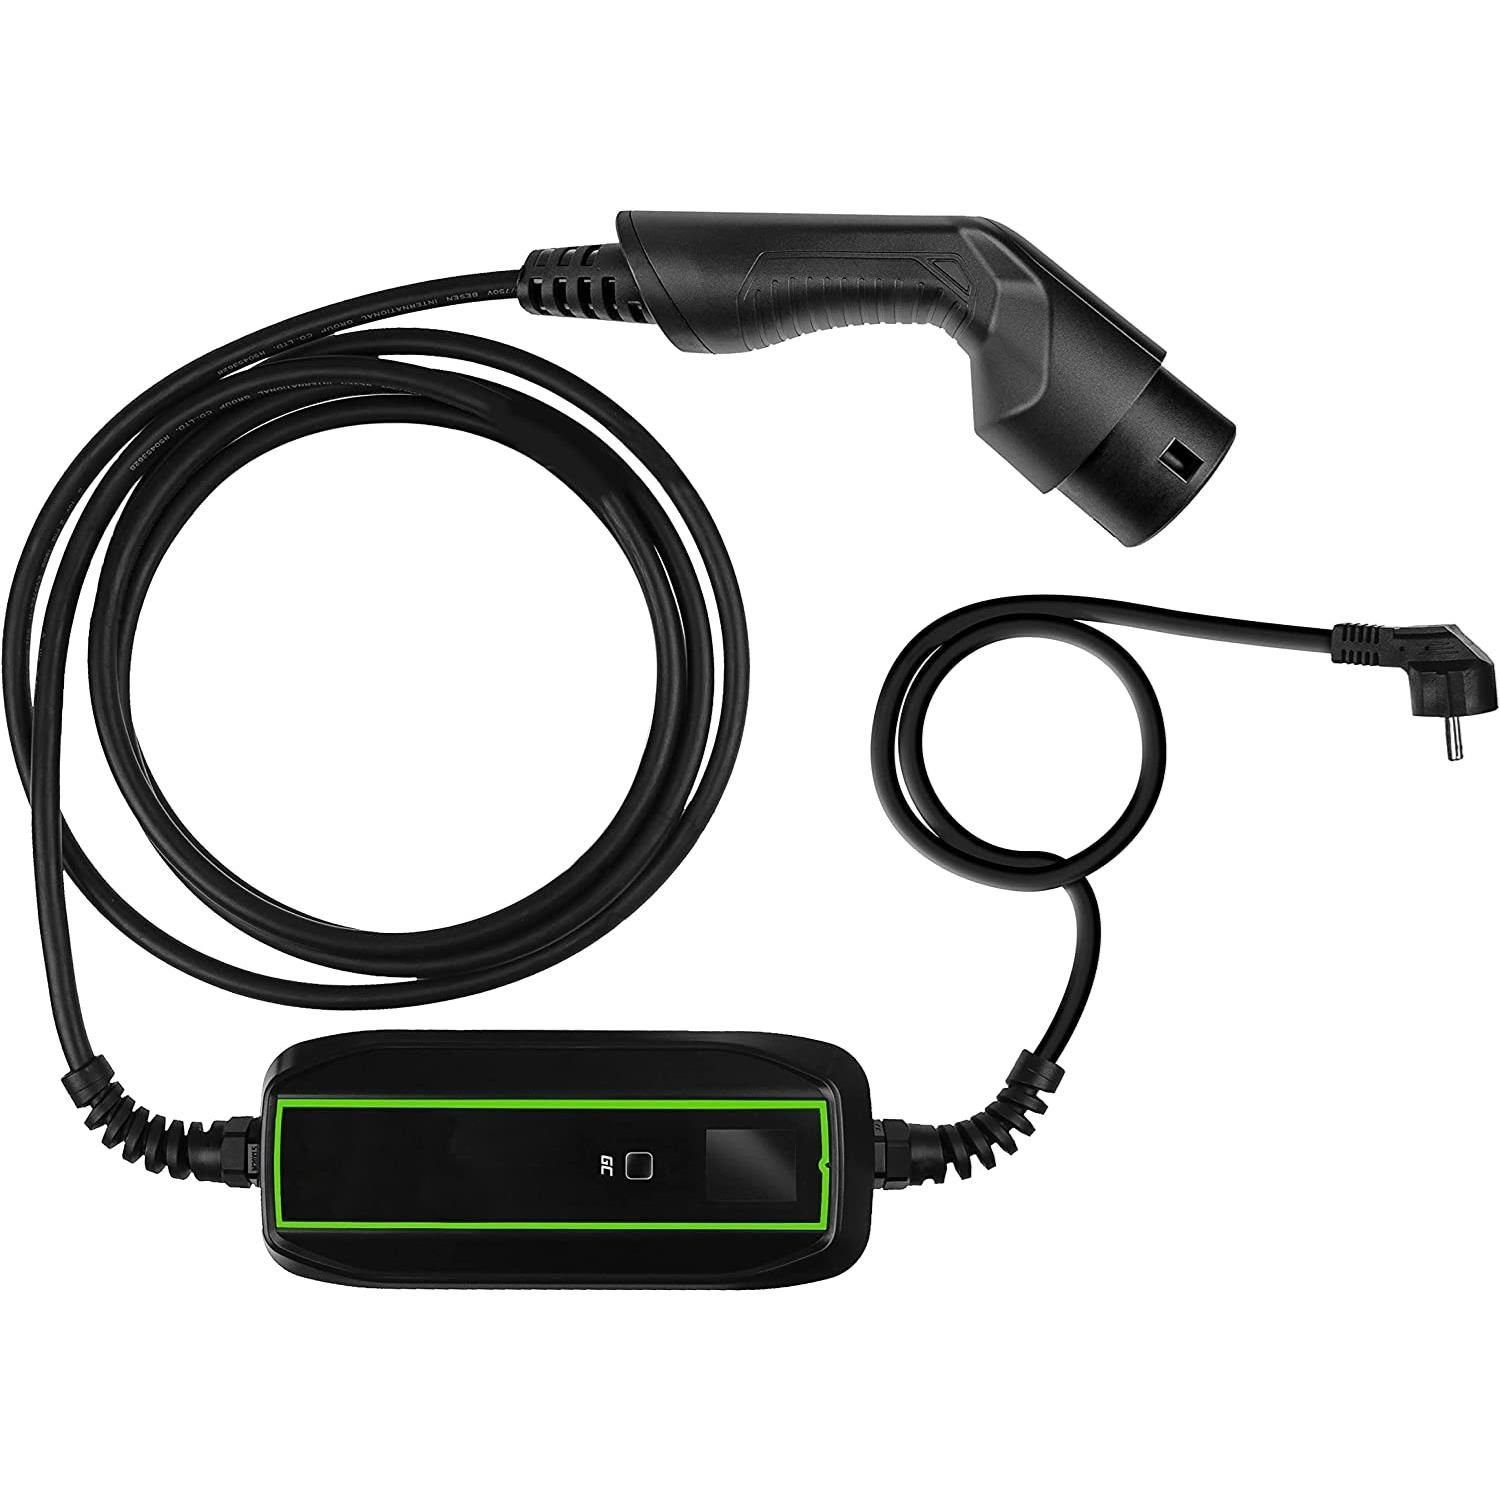 VOLTMOVE e-Auto Ladekabel Adapter für Ladekabel mit SCHUKO Stecker